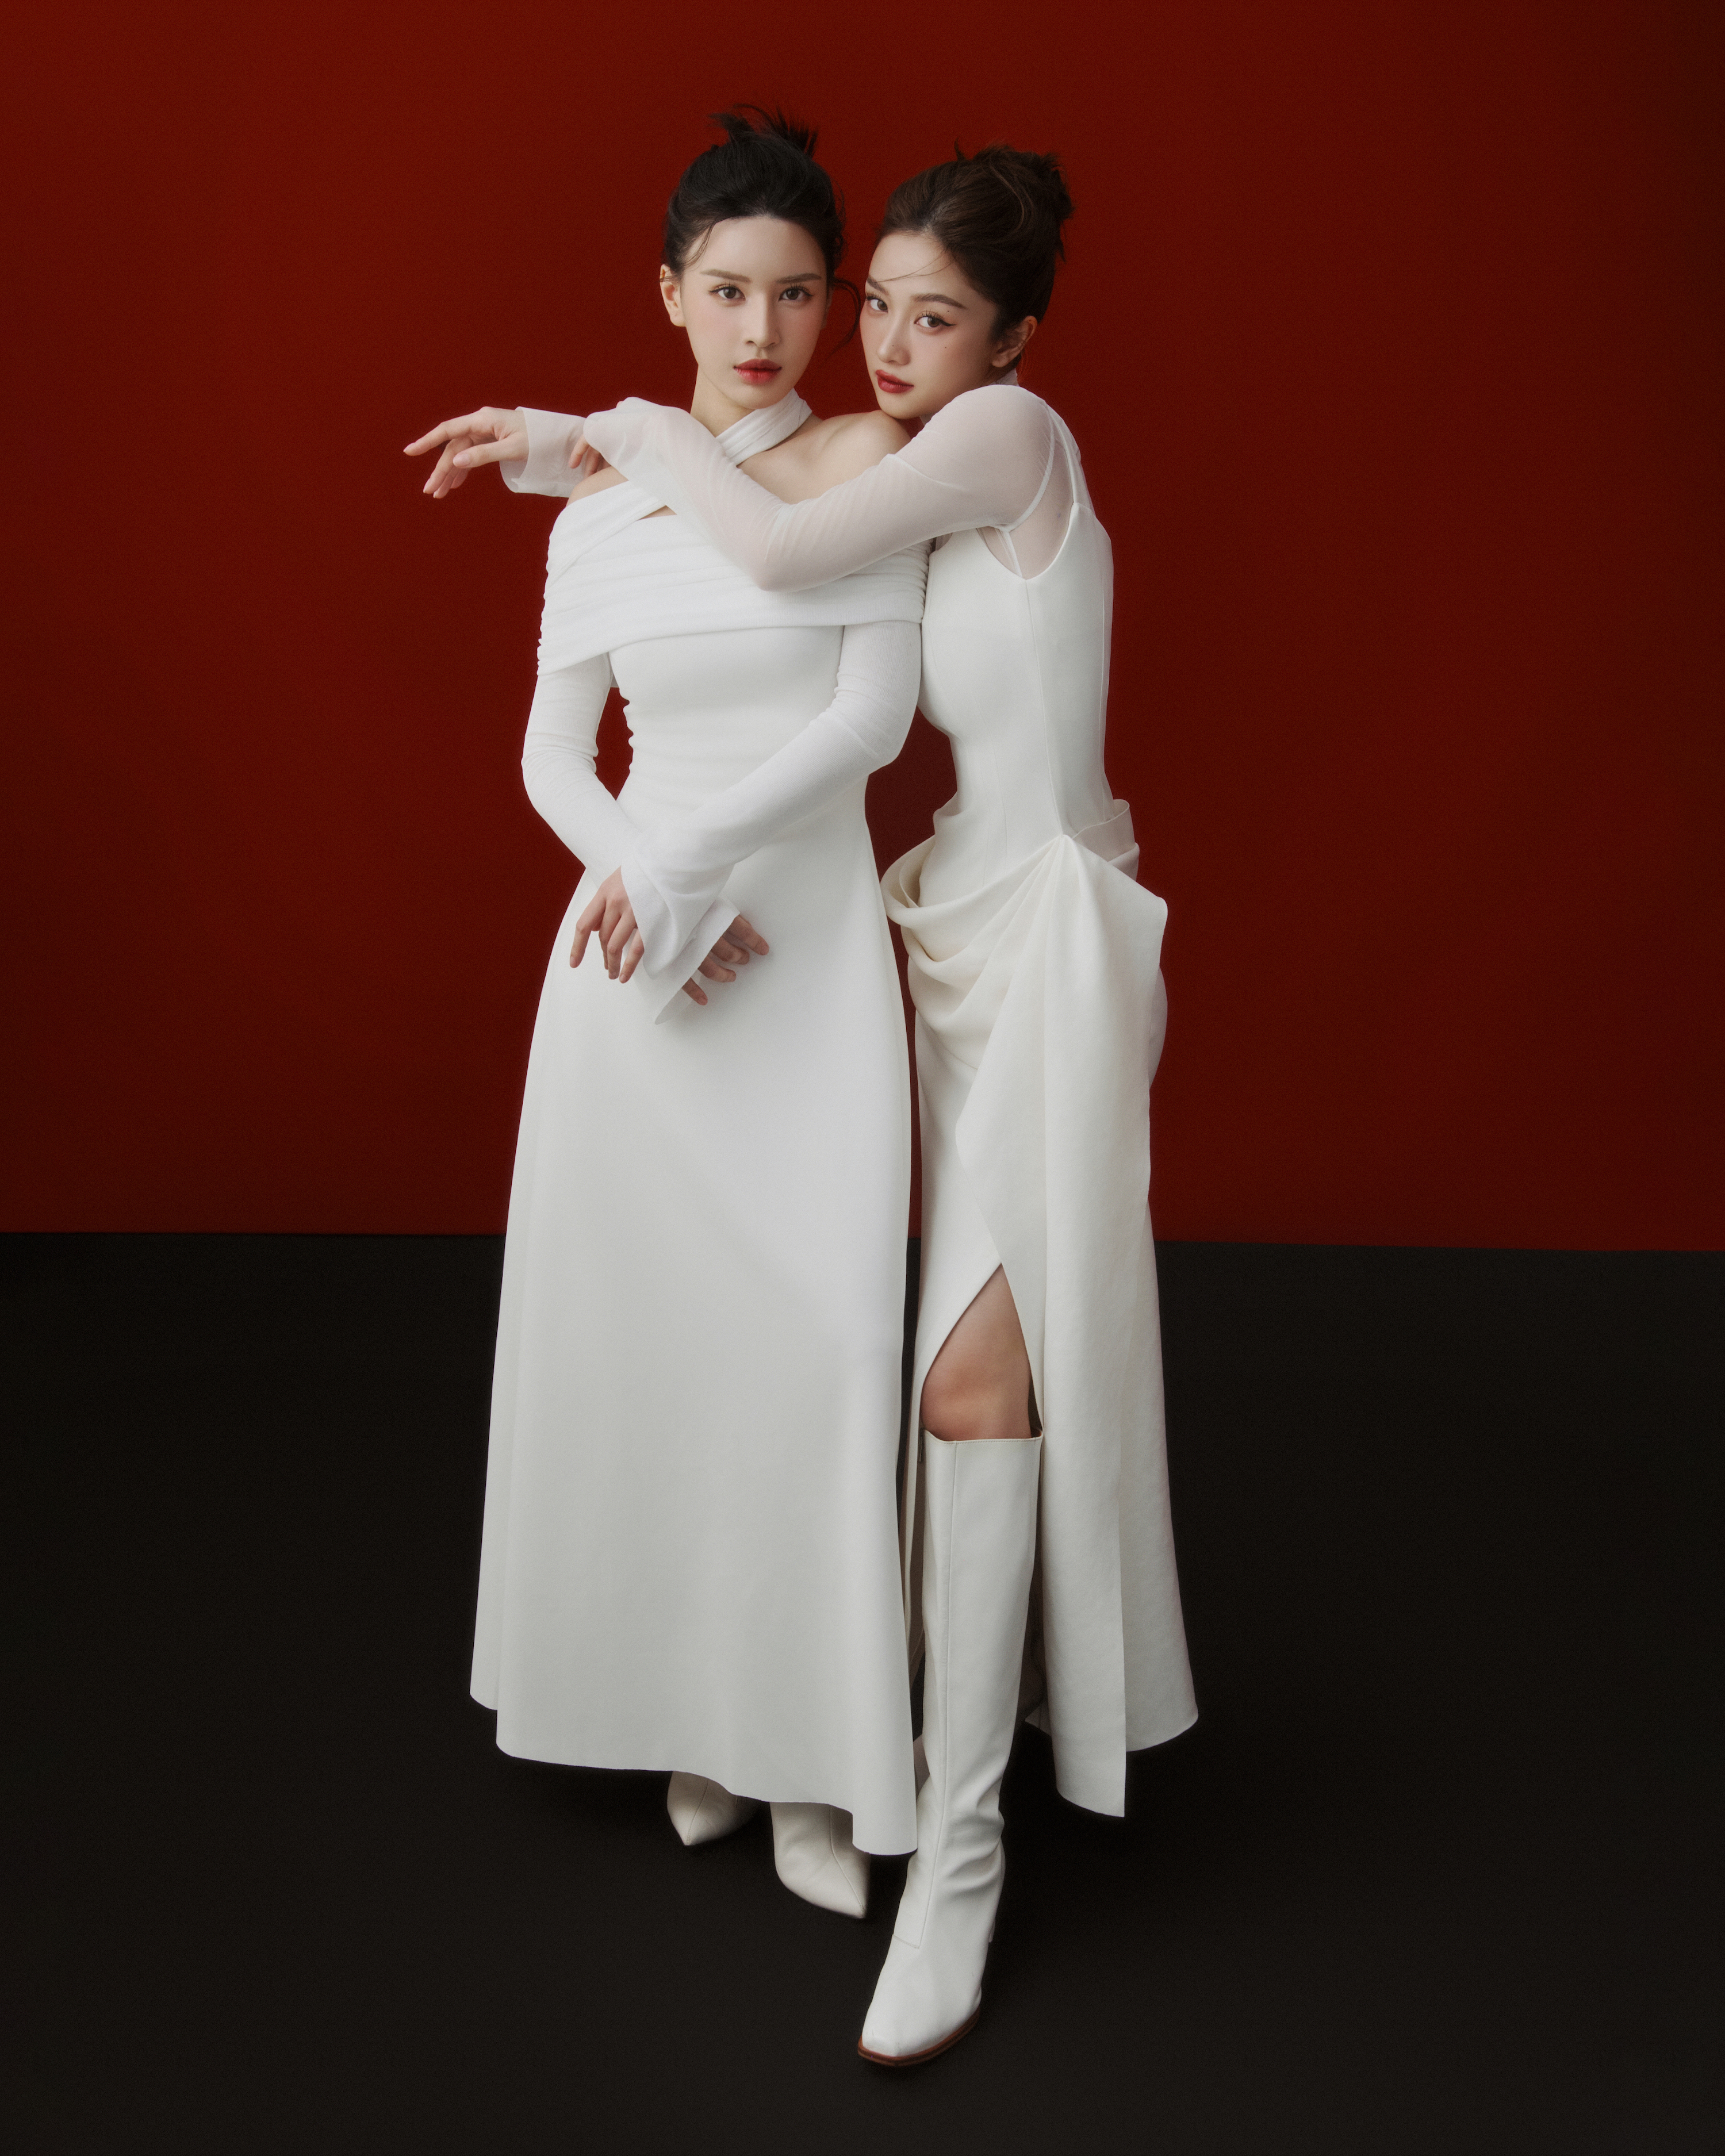 Jun Vũ đã cùng chị họ Phương Thảo xuất hiện trong bộ hình “Cộng hưởng Yêu thương” tôn vinh những tình cảm đẹp nhân dịp Tết 2024. Ảnh: Trí Nghĩa